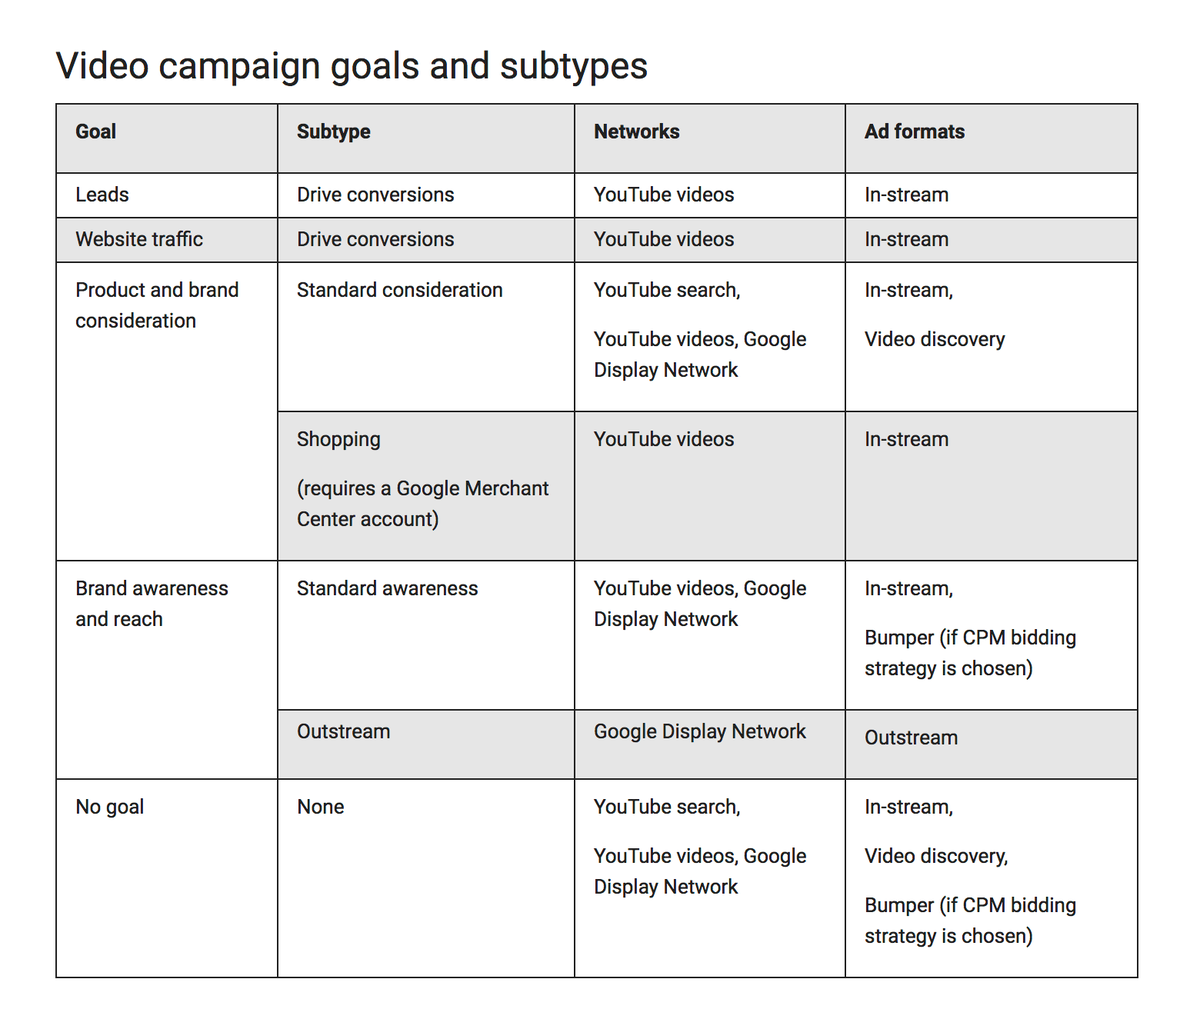 Objectifs et sous-types de campagnes vidéo